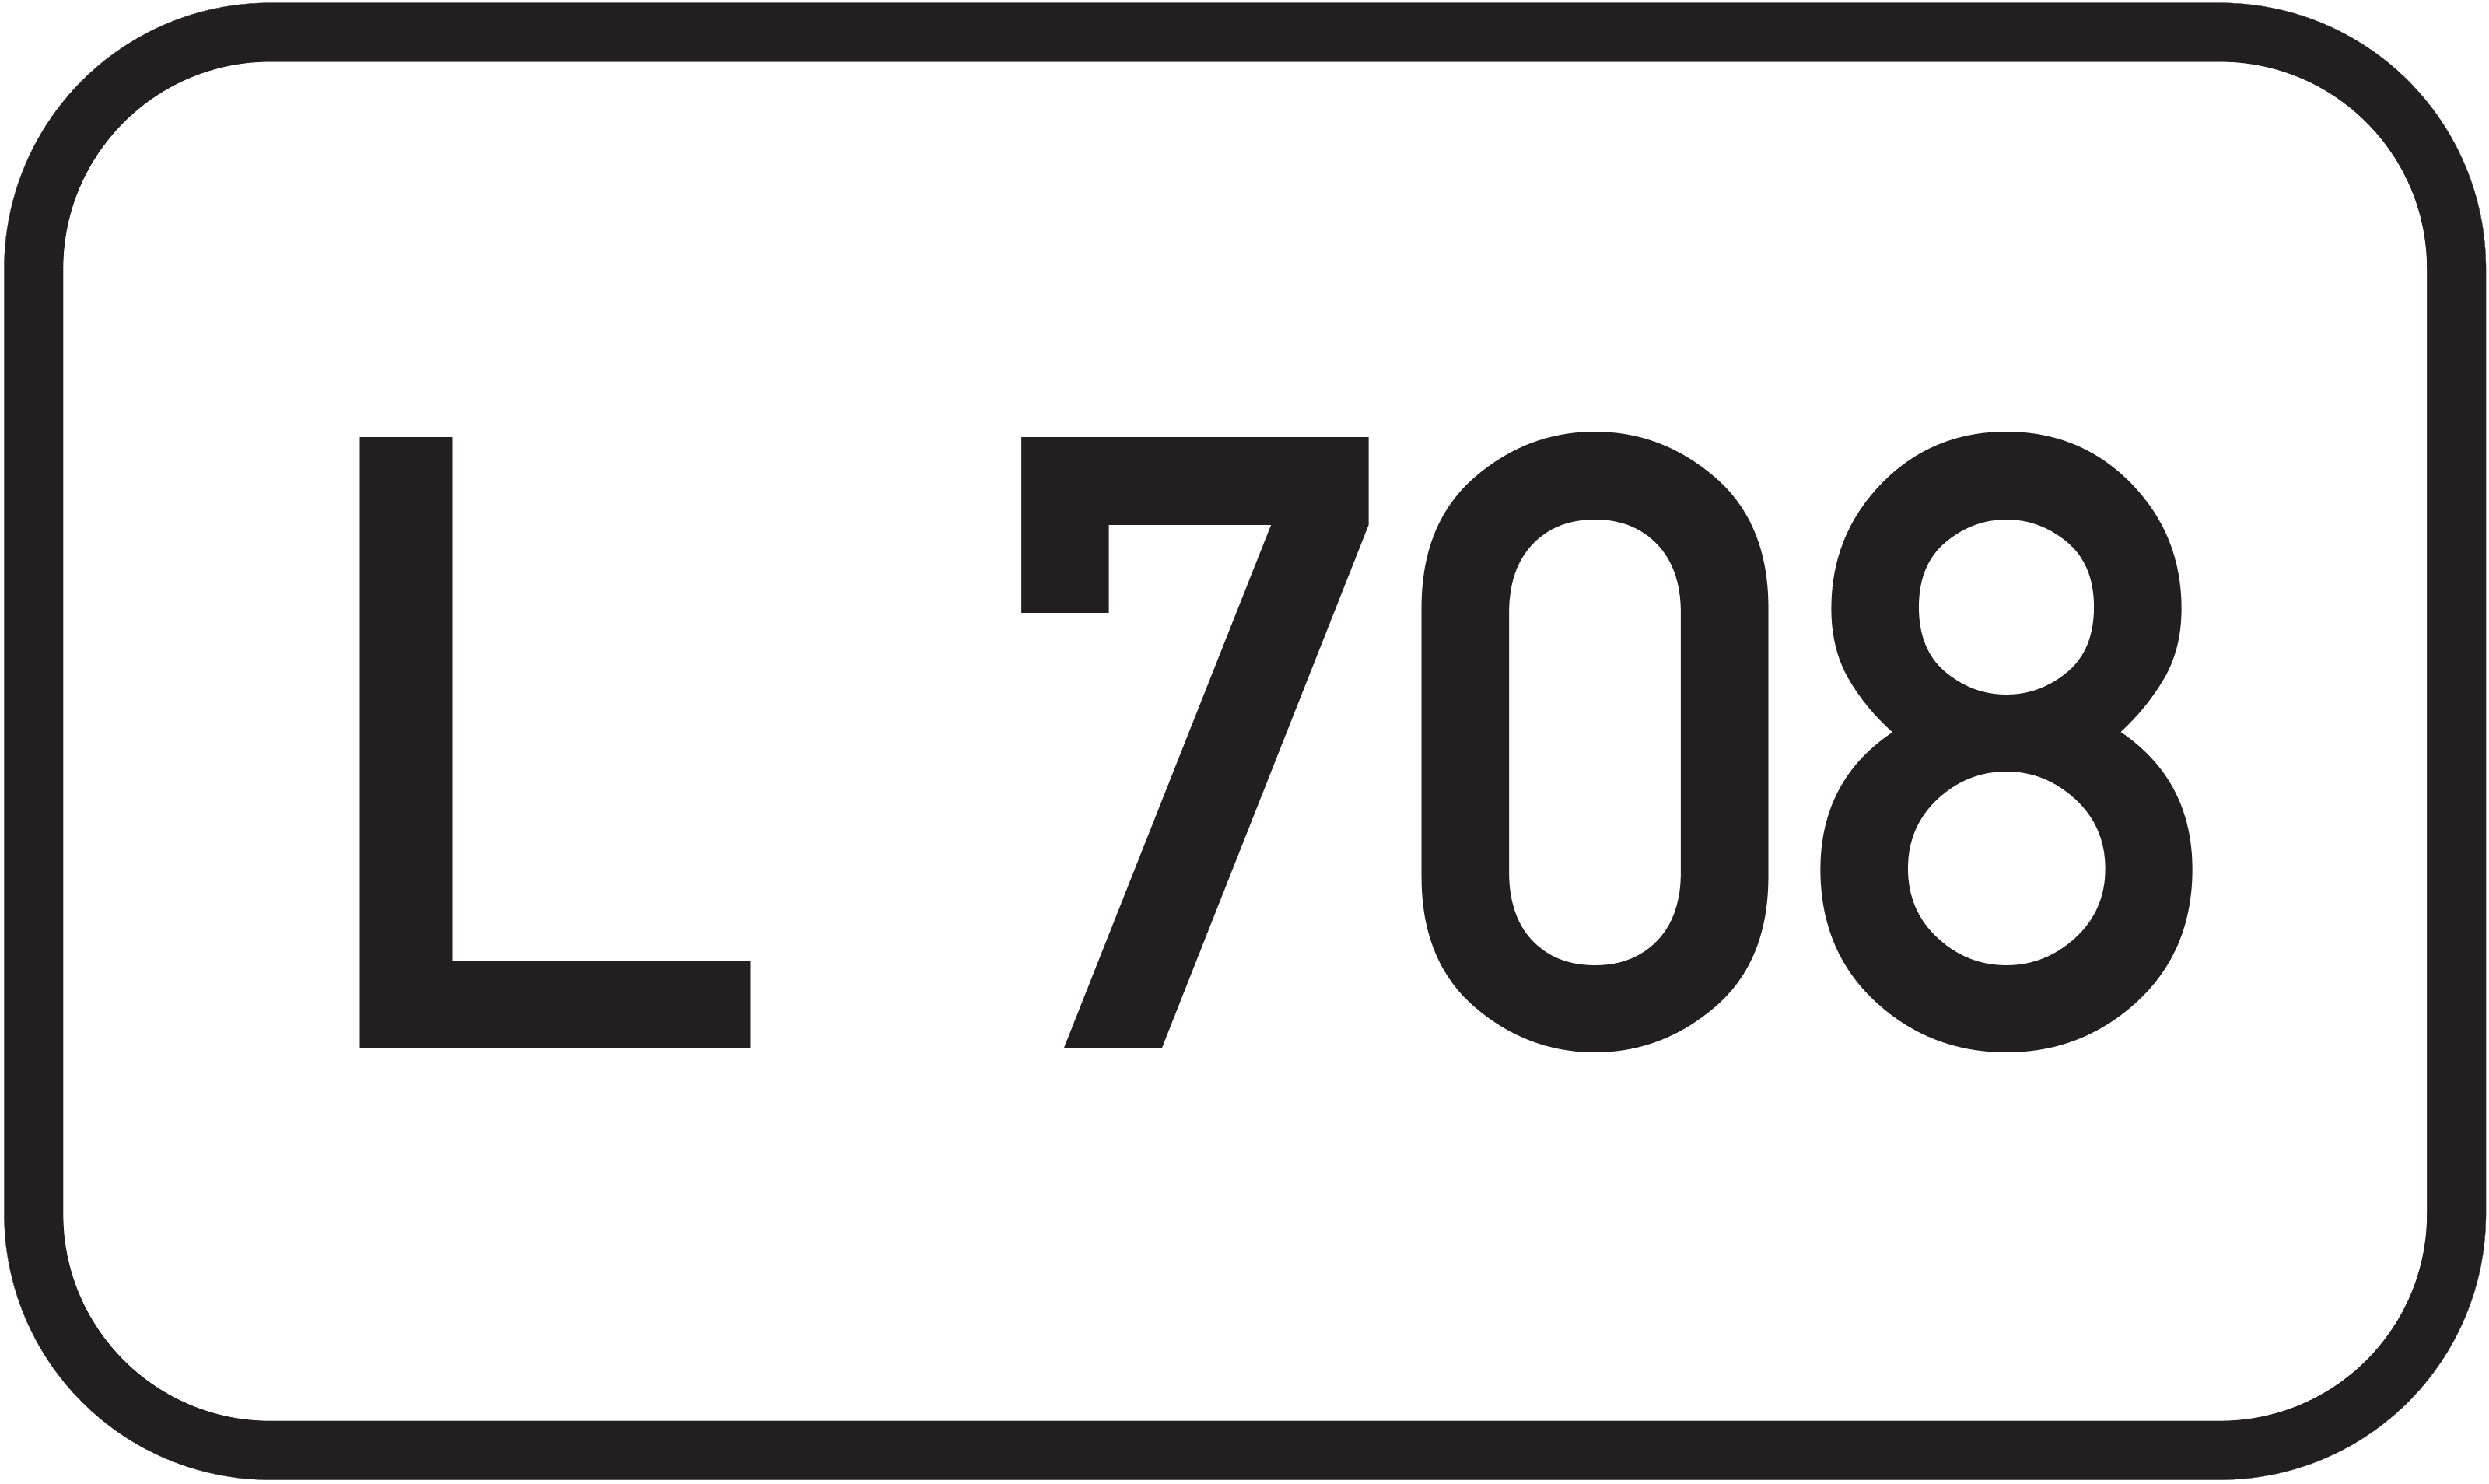 Landesstraße L 708